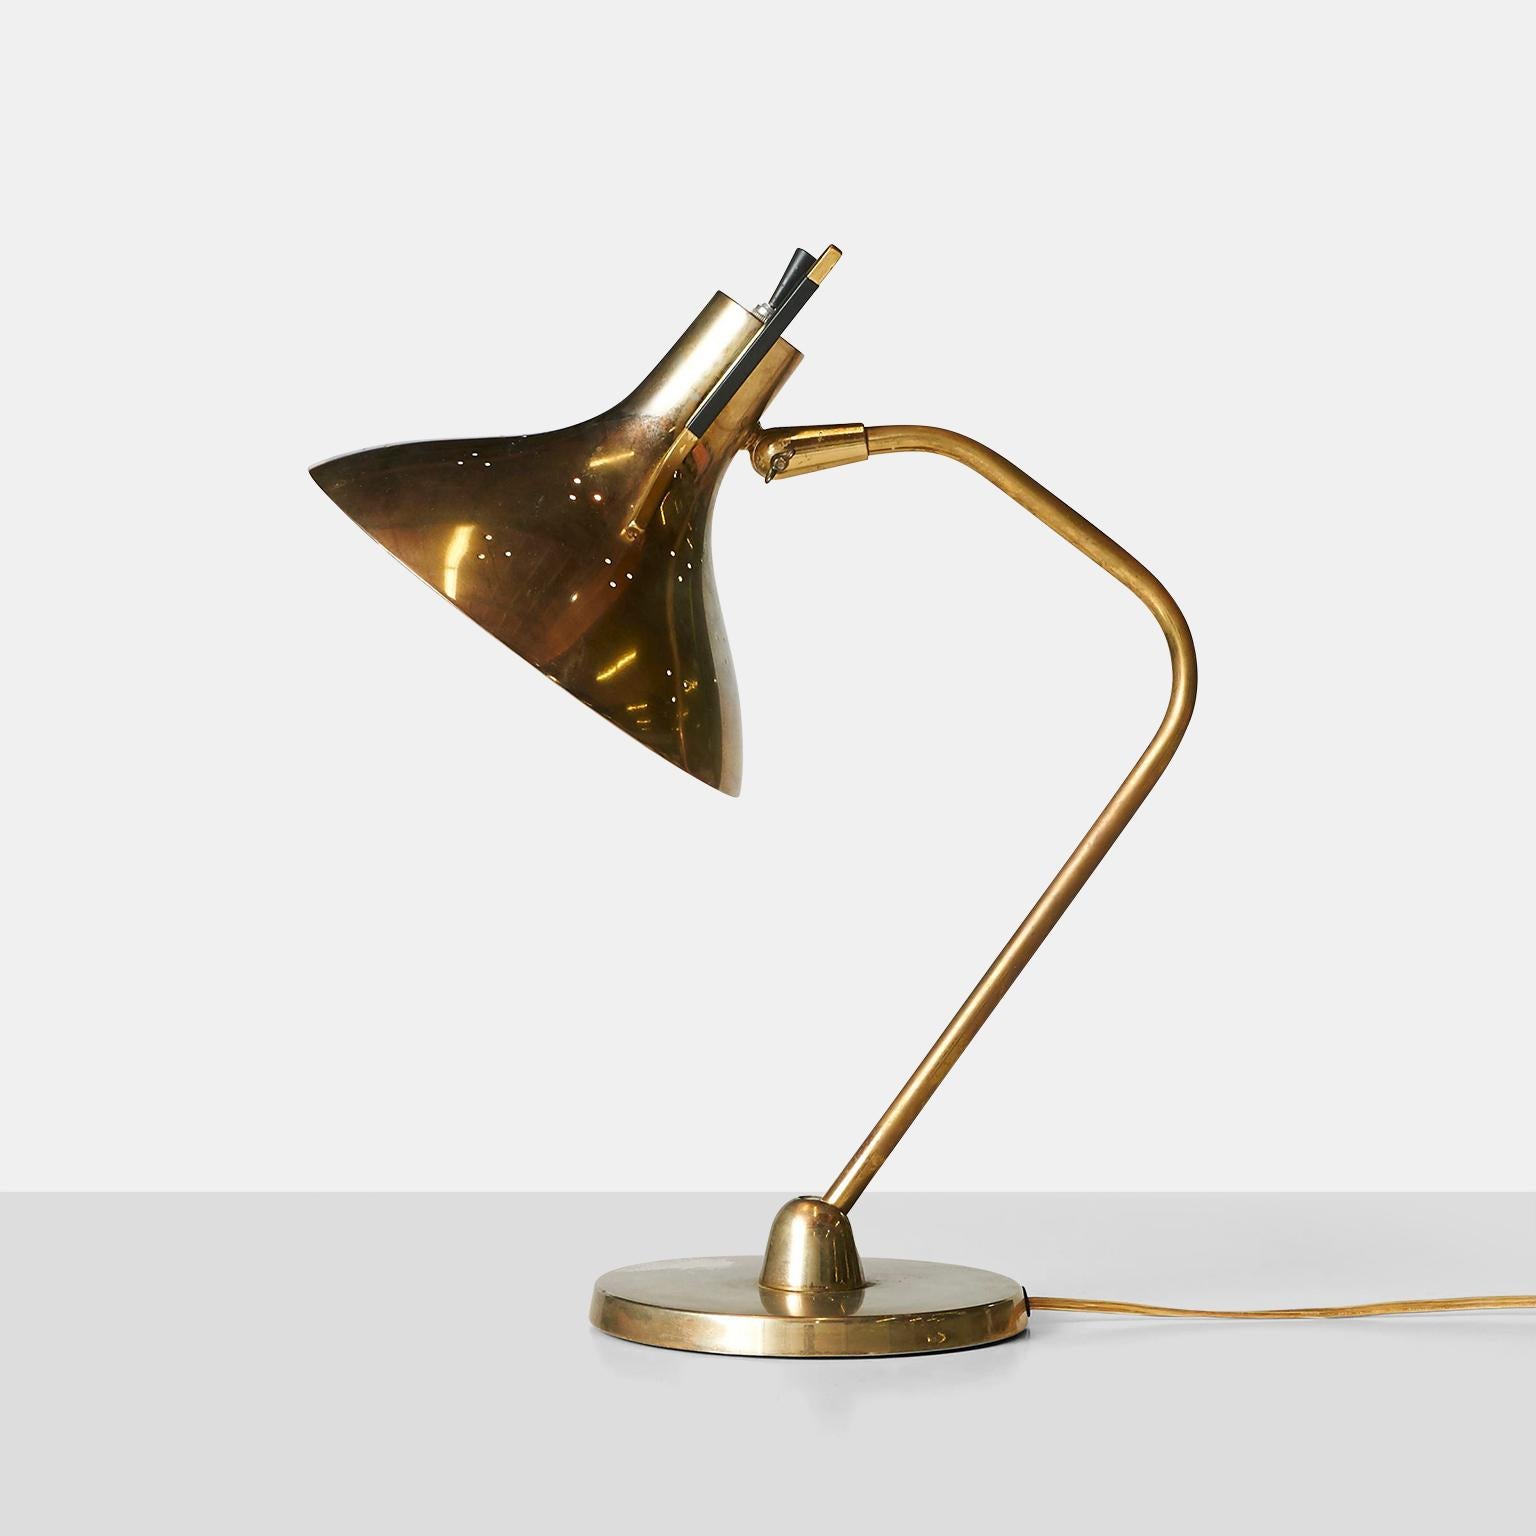 Une lampe de bureau pour Lightolier qui a été recâblée pour être utilisée aux États-Unis. Souvent attribué à Maurizio Tempestini.